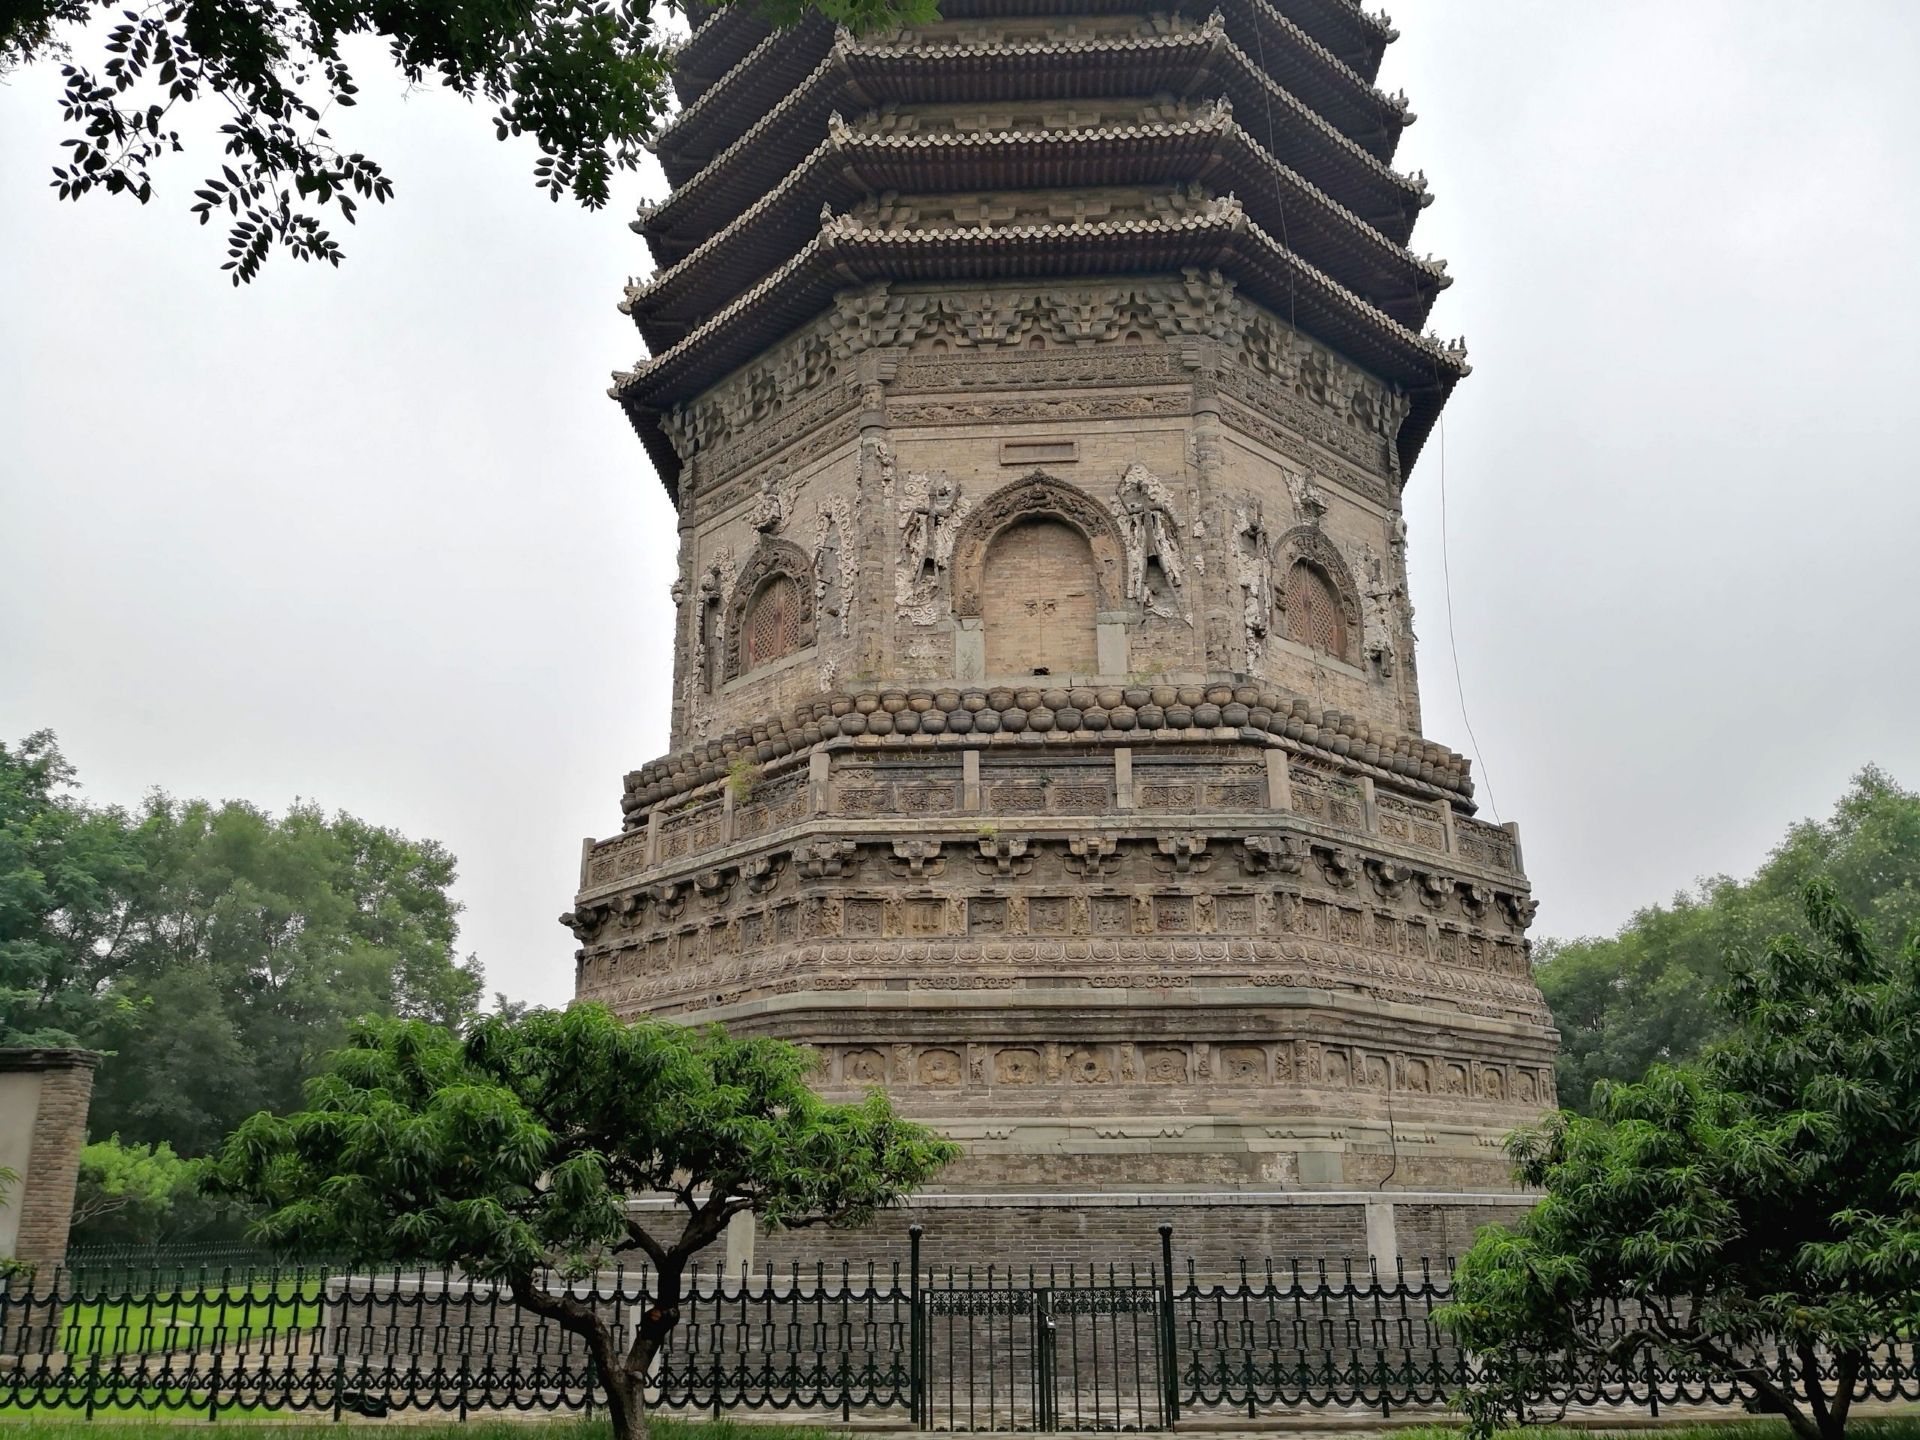 【携程攻略】北京玲珑塔(八里庄塔)景点,慈寿寺塔 慈寿寺塔是北京城里